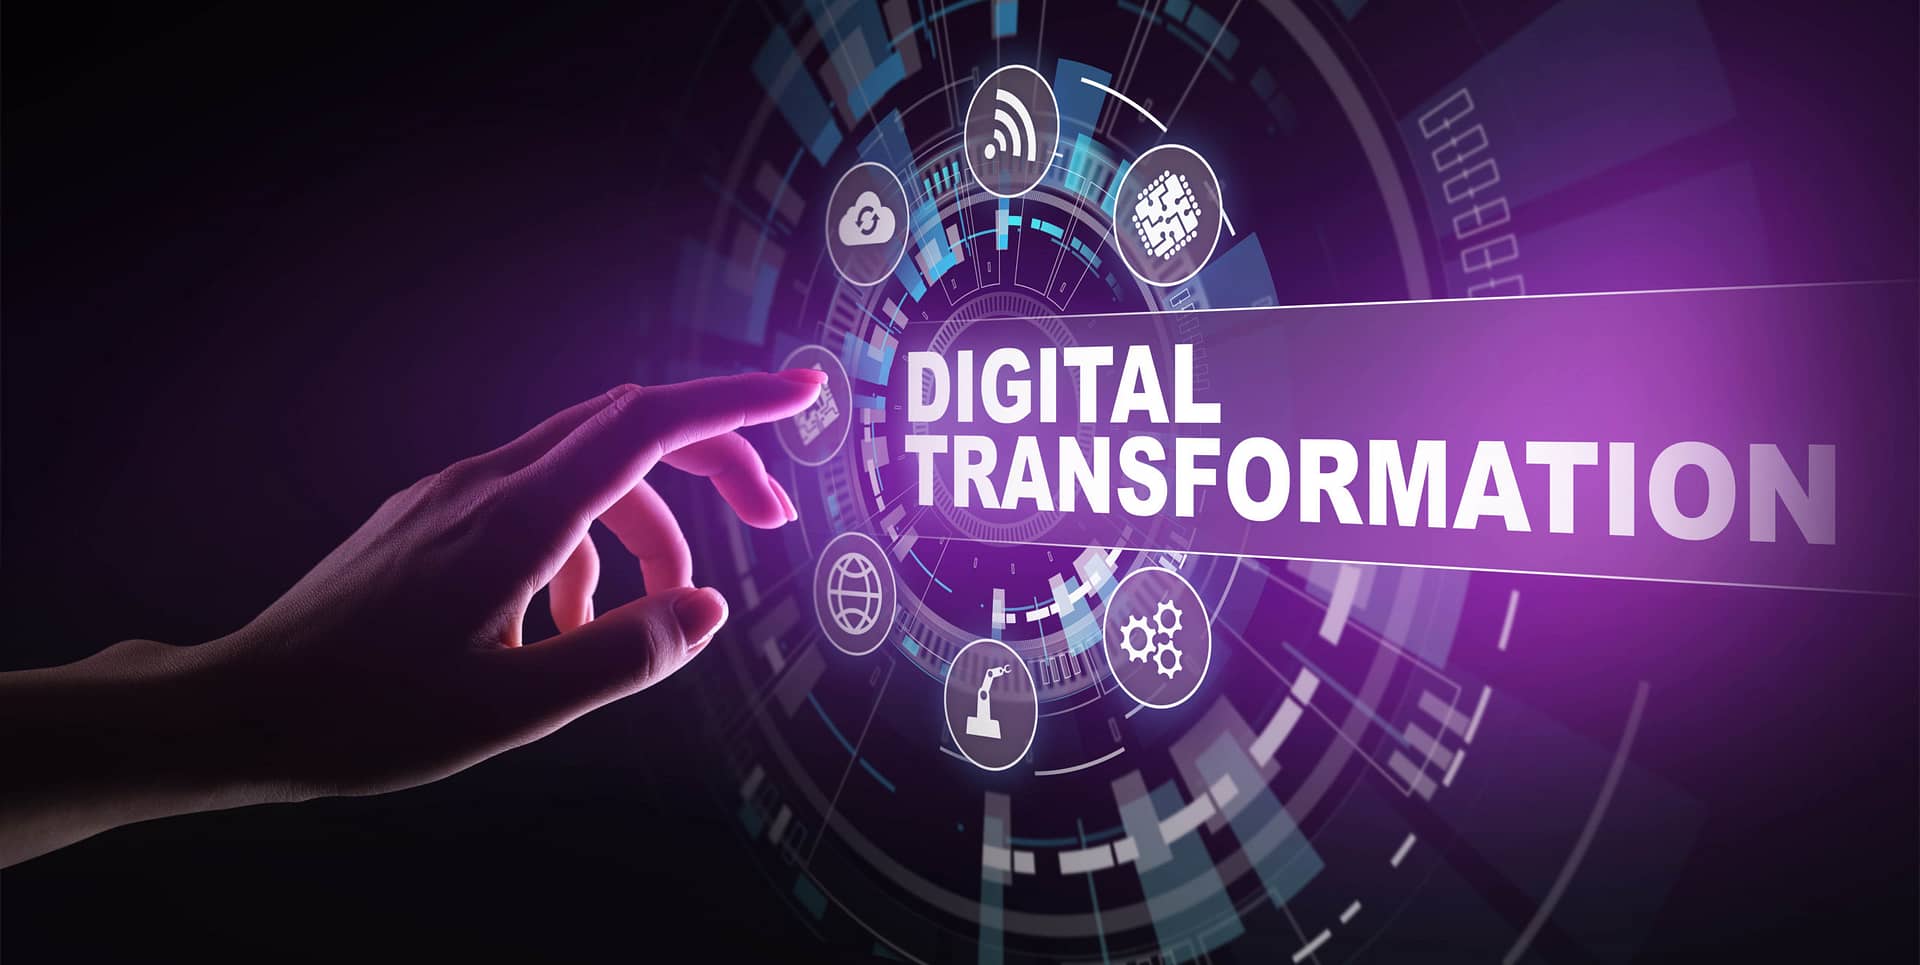 Digital-transformation